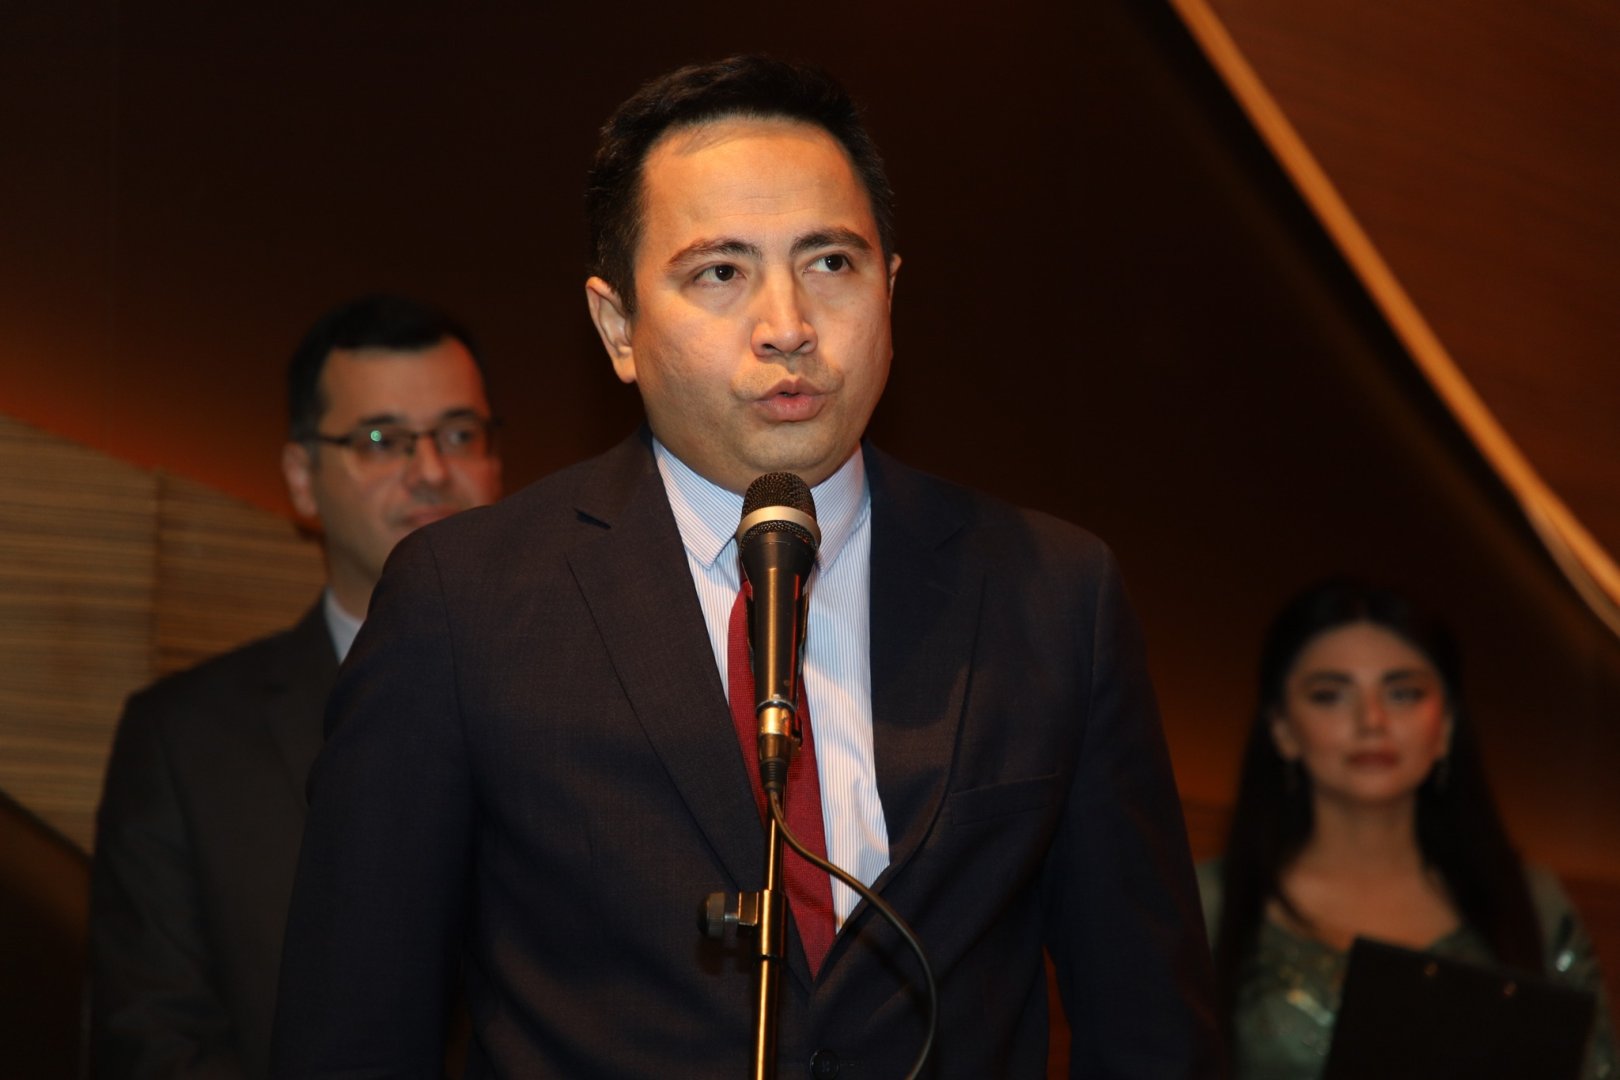 В рамках Дней культуры Казахстана в Азербайджане состоялся концерт ансамбля Hassak (ФОТО)